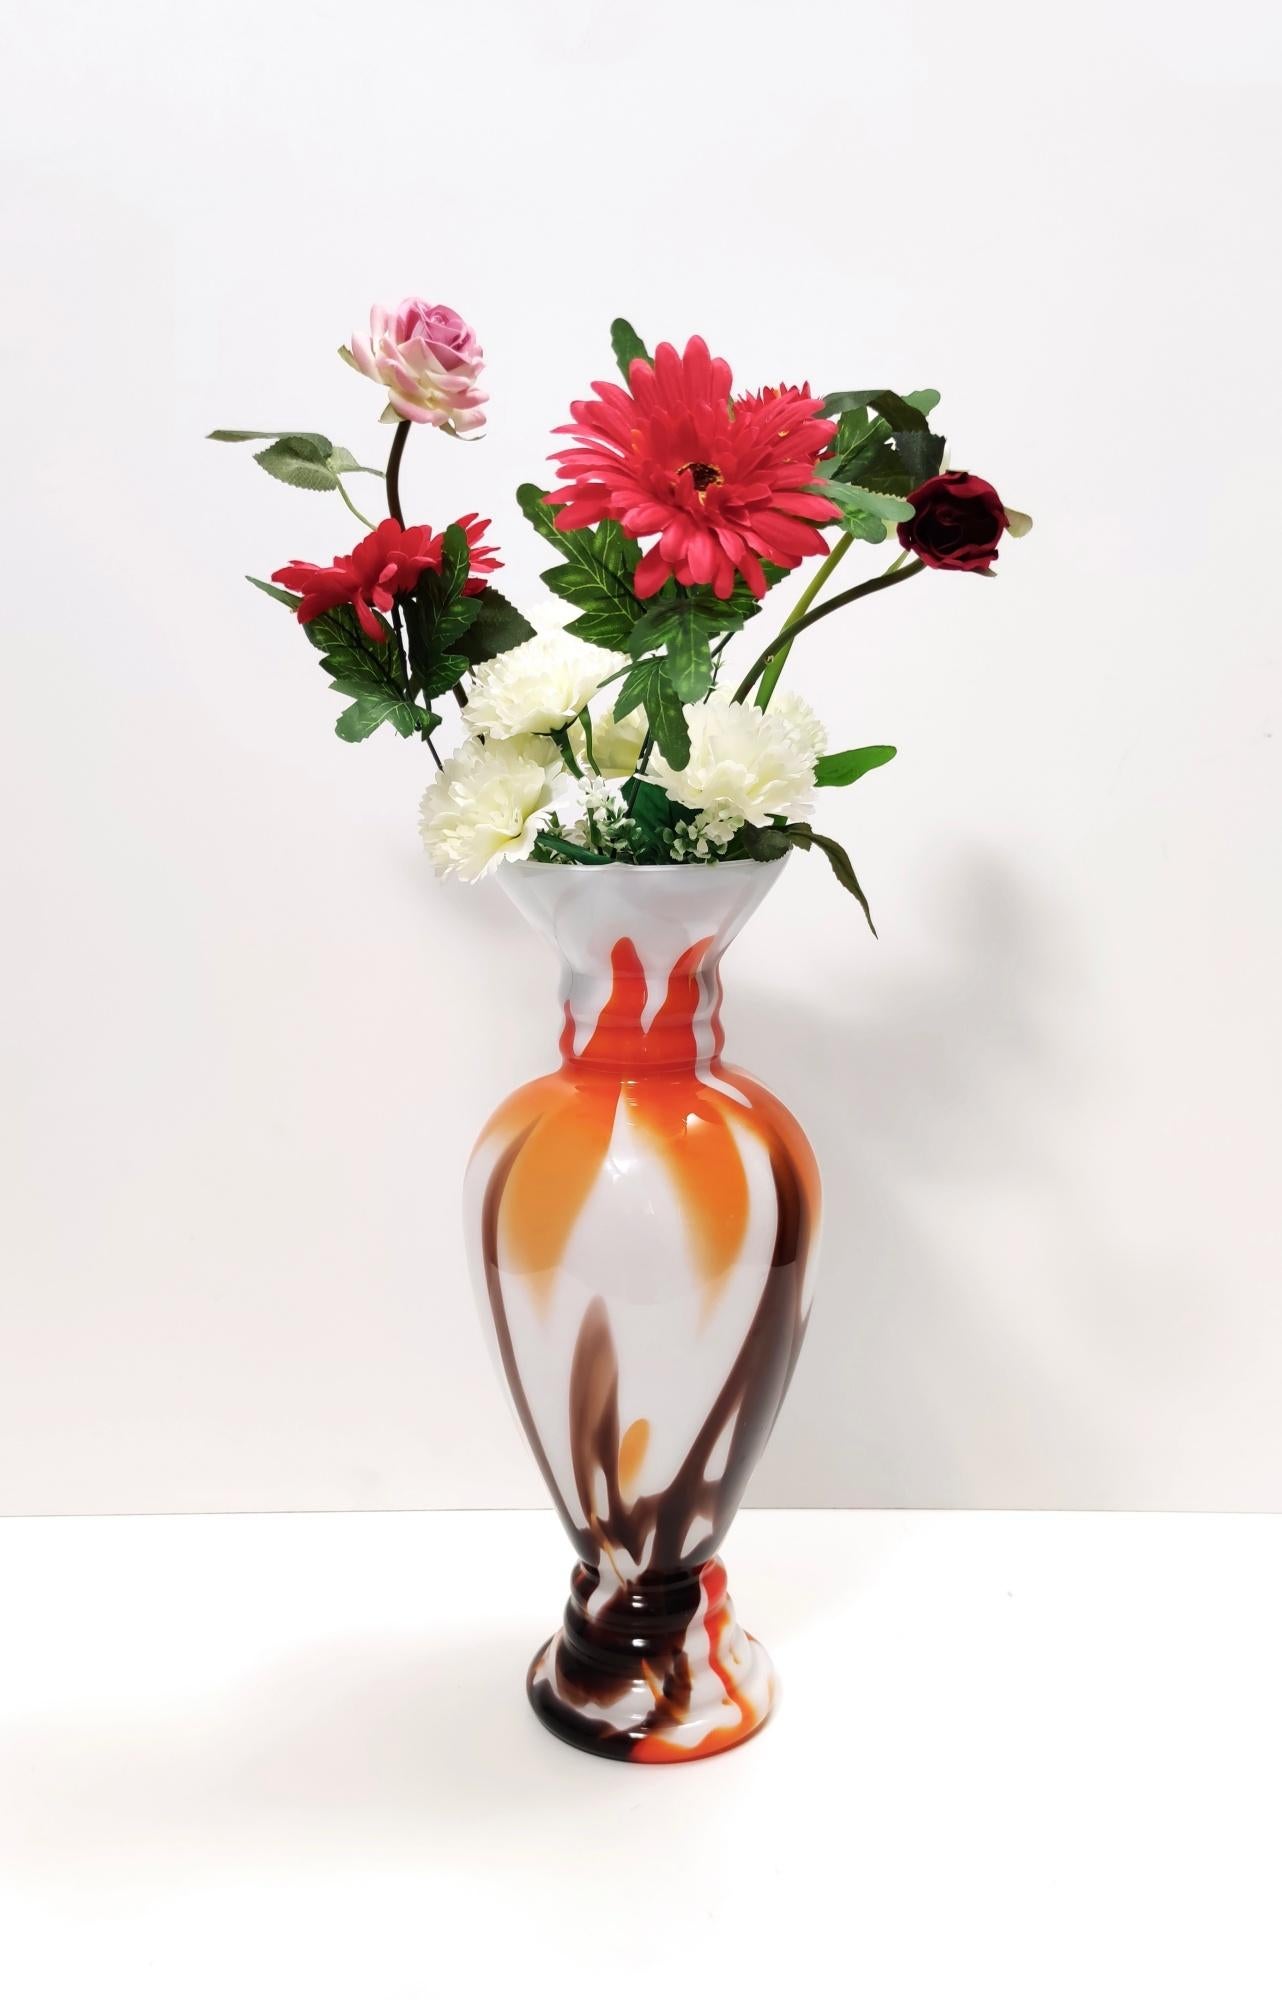 Fabriqué en Italie, années 1970. 
Ce vase est fabriqué en verre de Murano.
Il peut présenter de légères traces d'utilisation puisqu'il est vintage, mais il peut être considéré comme étant en parfait état d'origine et prêt à devenir une pièce dans un